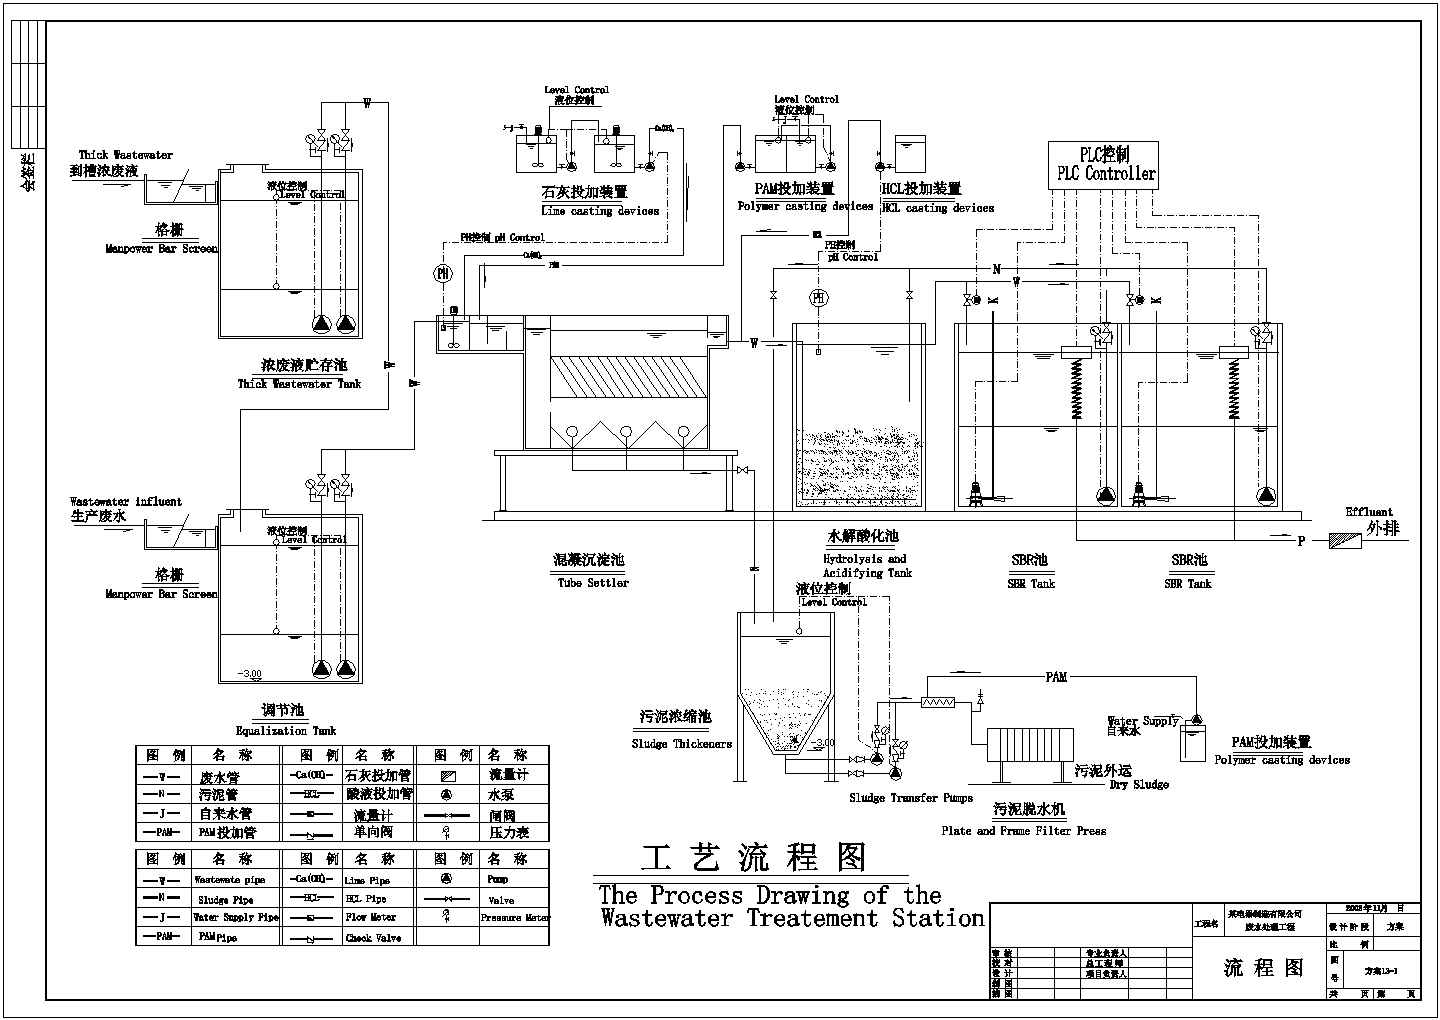 某电器制造公司废水处理工艺流程图